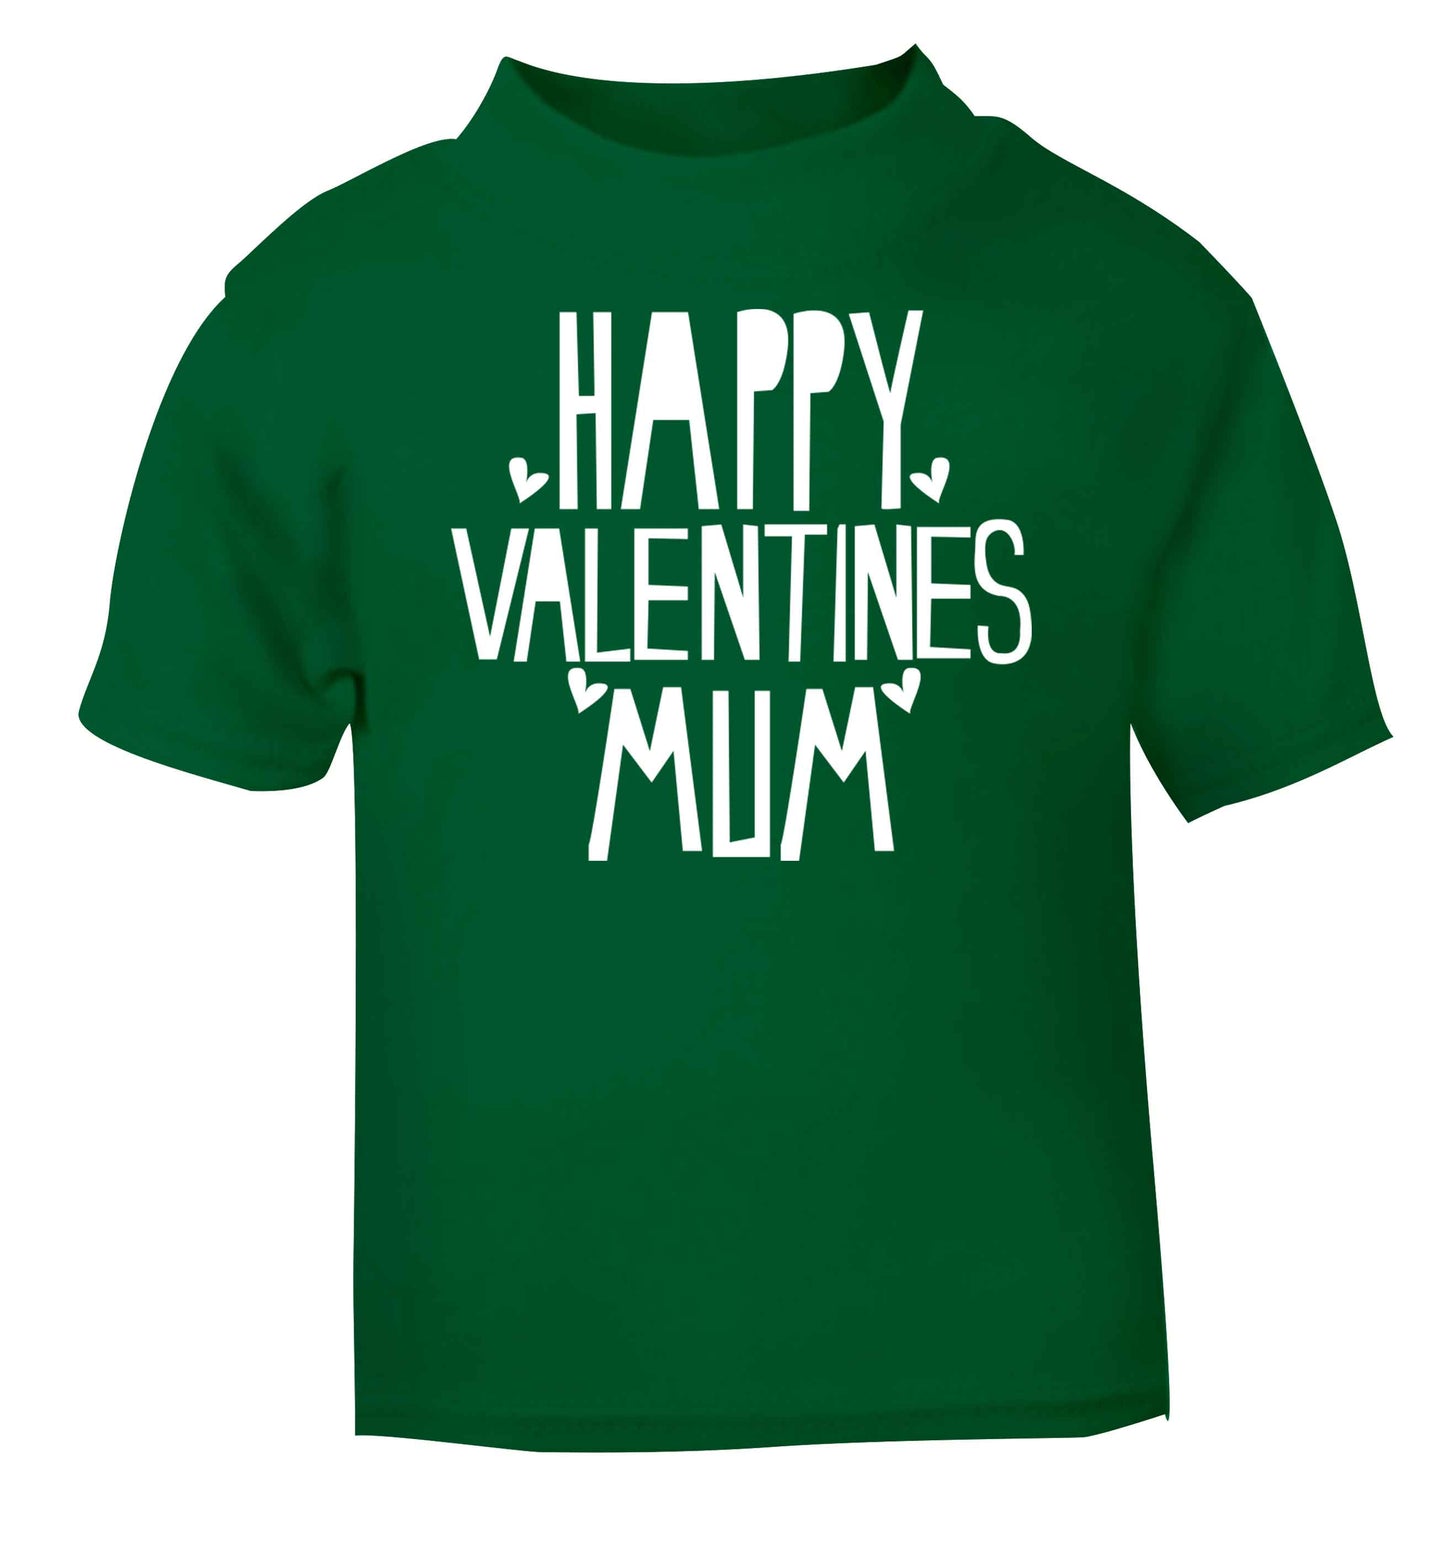 Happy valentines mum green baby toddler Tshirt 2 Years